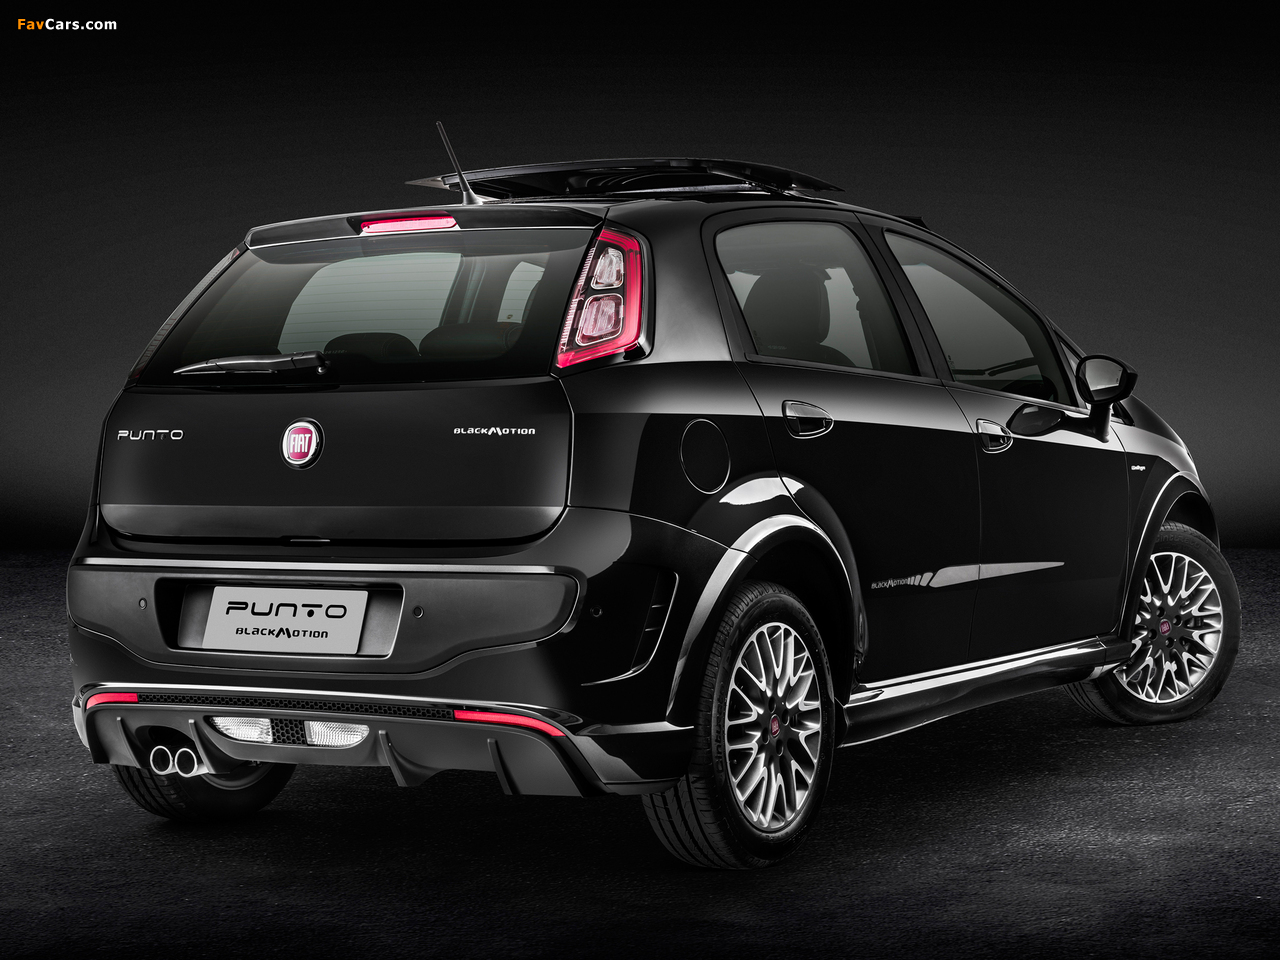 Fiat Punto BlackMotion (310) 2013 photos (1280 x 960)